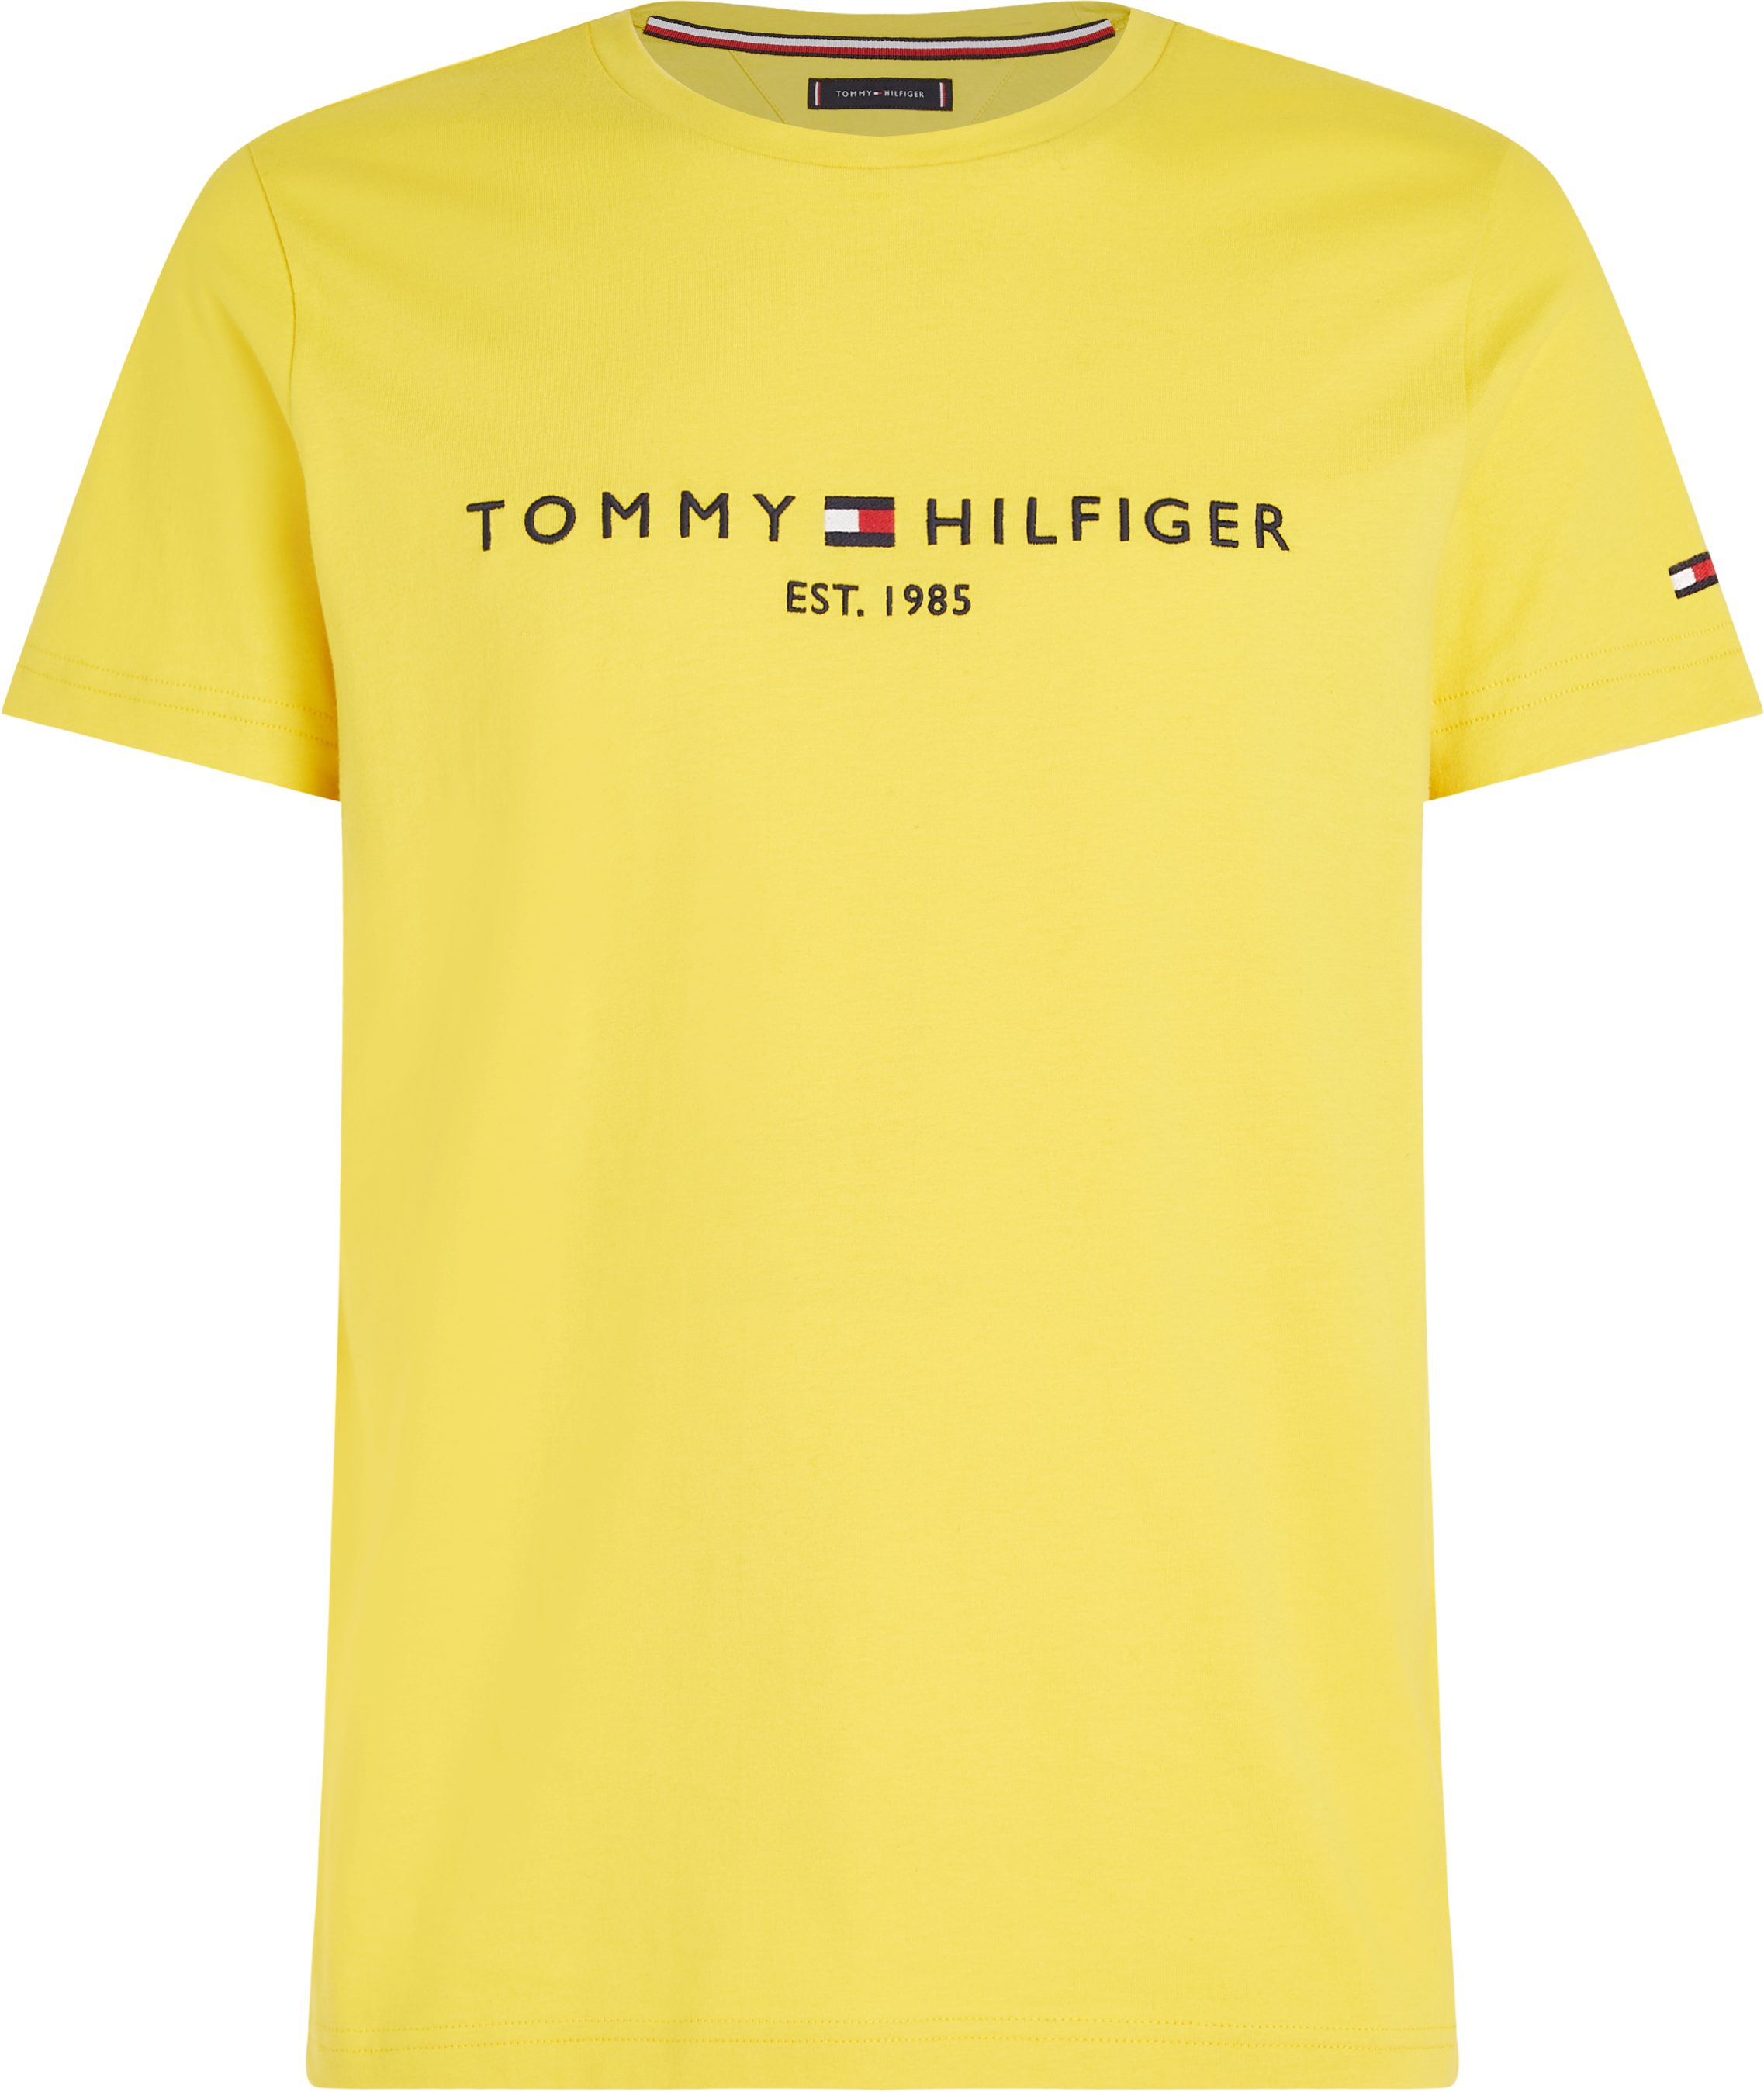 aus Tommy Yellow LOGO nachhaltiger Hilfiger Eureka TEE reiner, TOMMY T-Shirt Baumwolle